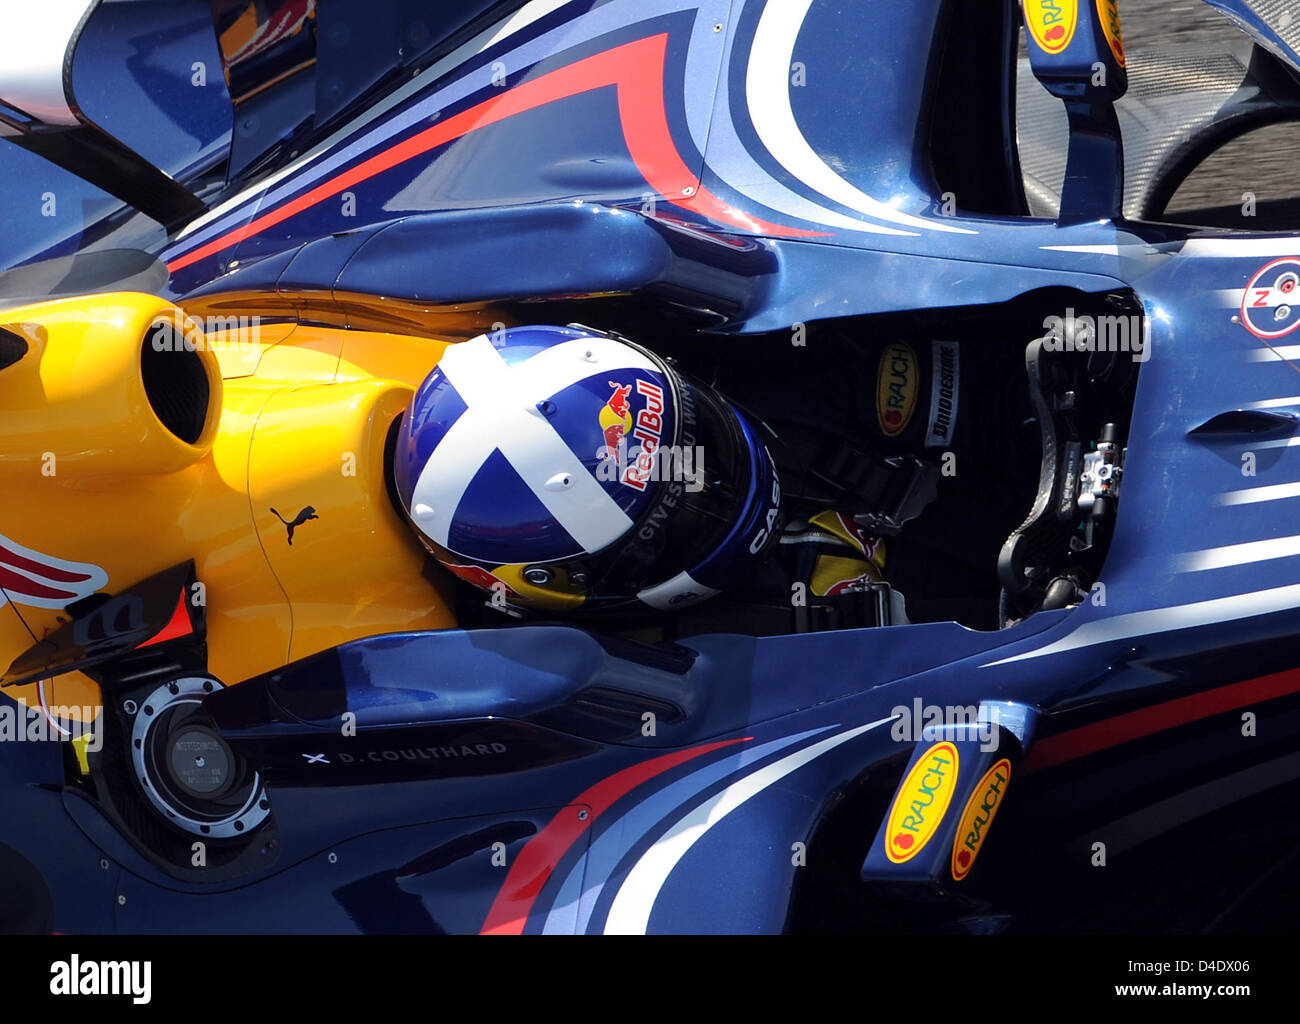 Scottish pilota di Formula Uno David Coulthard della Red Bull Racing manzi la sua auto attraverso la pit lane durante la prima sessione di prove libere sul Circuito de Catalunya di Montmelo vicino a Barcellona, Spagna, 25 aprile 2008. Foto: GERO BRELOER Foto Stock